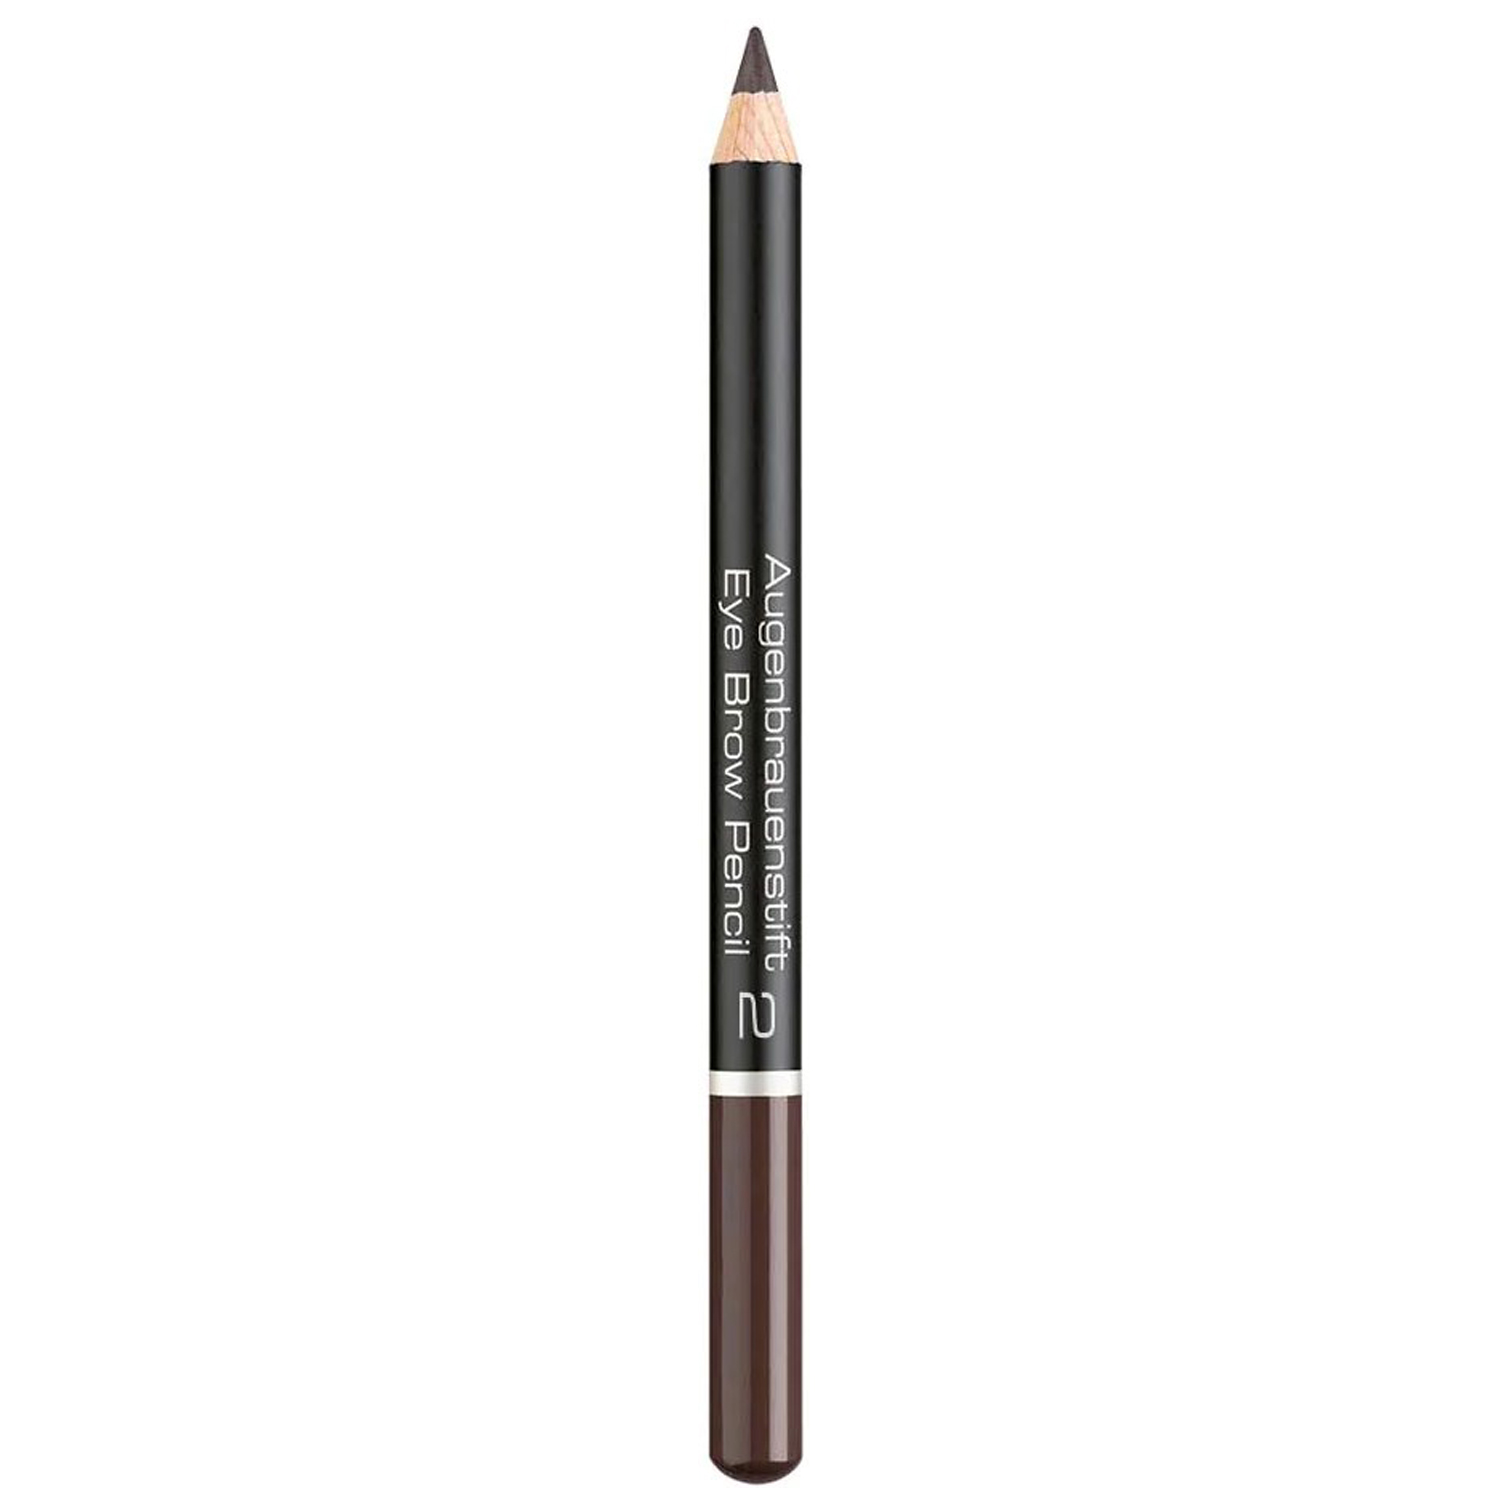 Олівець для брів Artdeco Eye Brow Pencil Intensive Brown тон 2, 1.1 г (73394) - фото 1